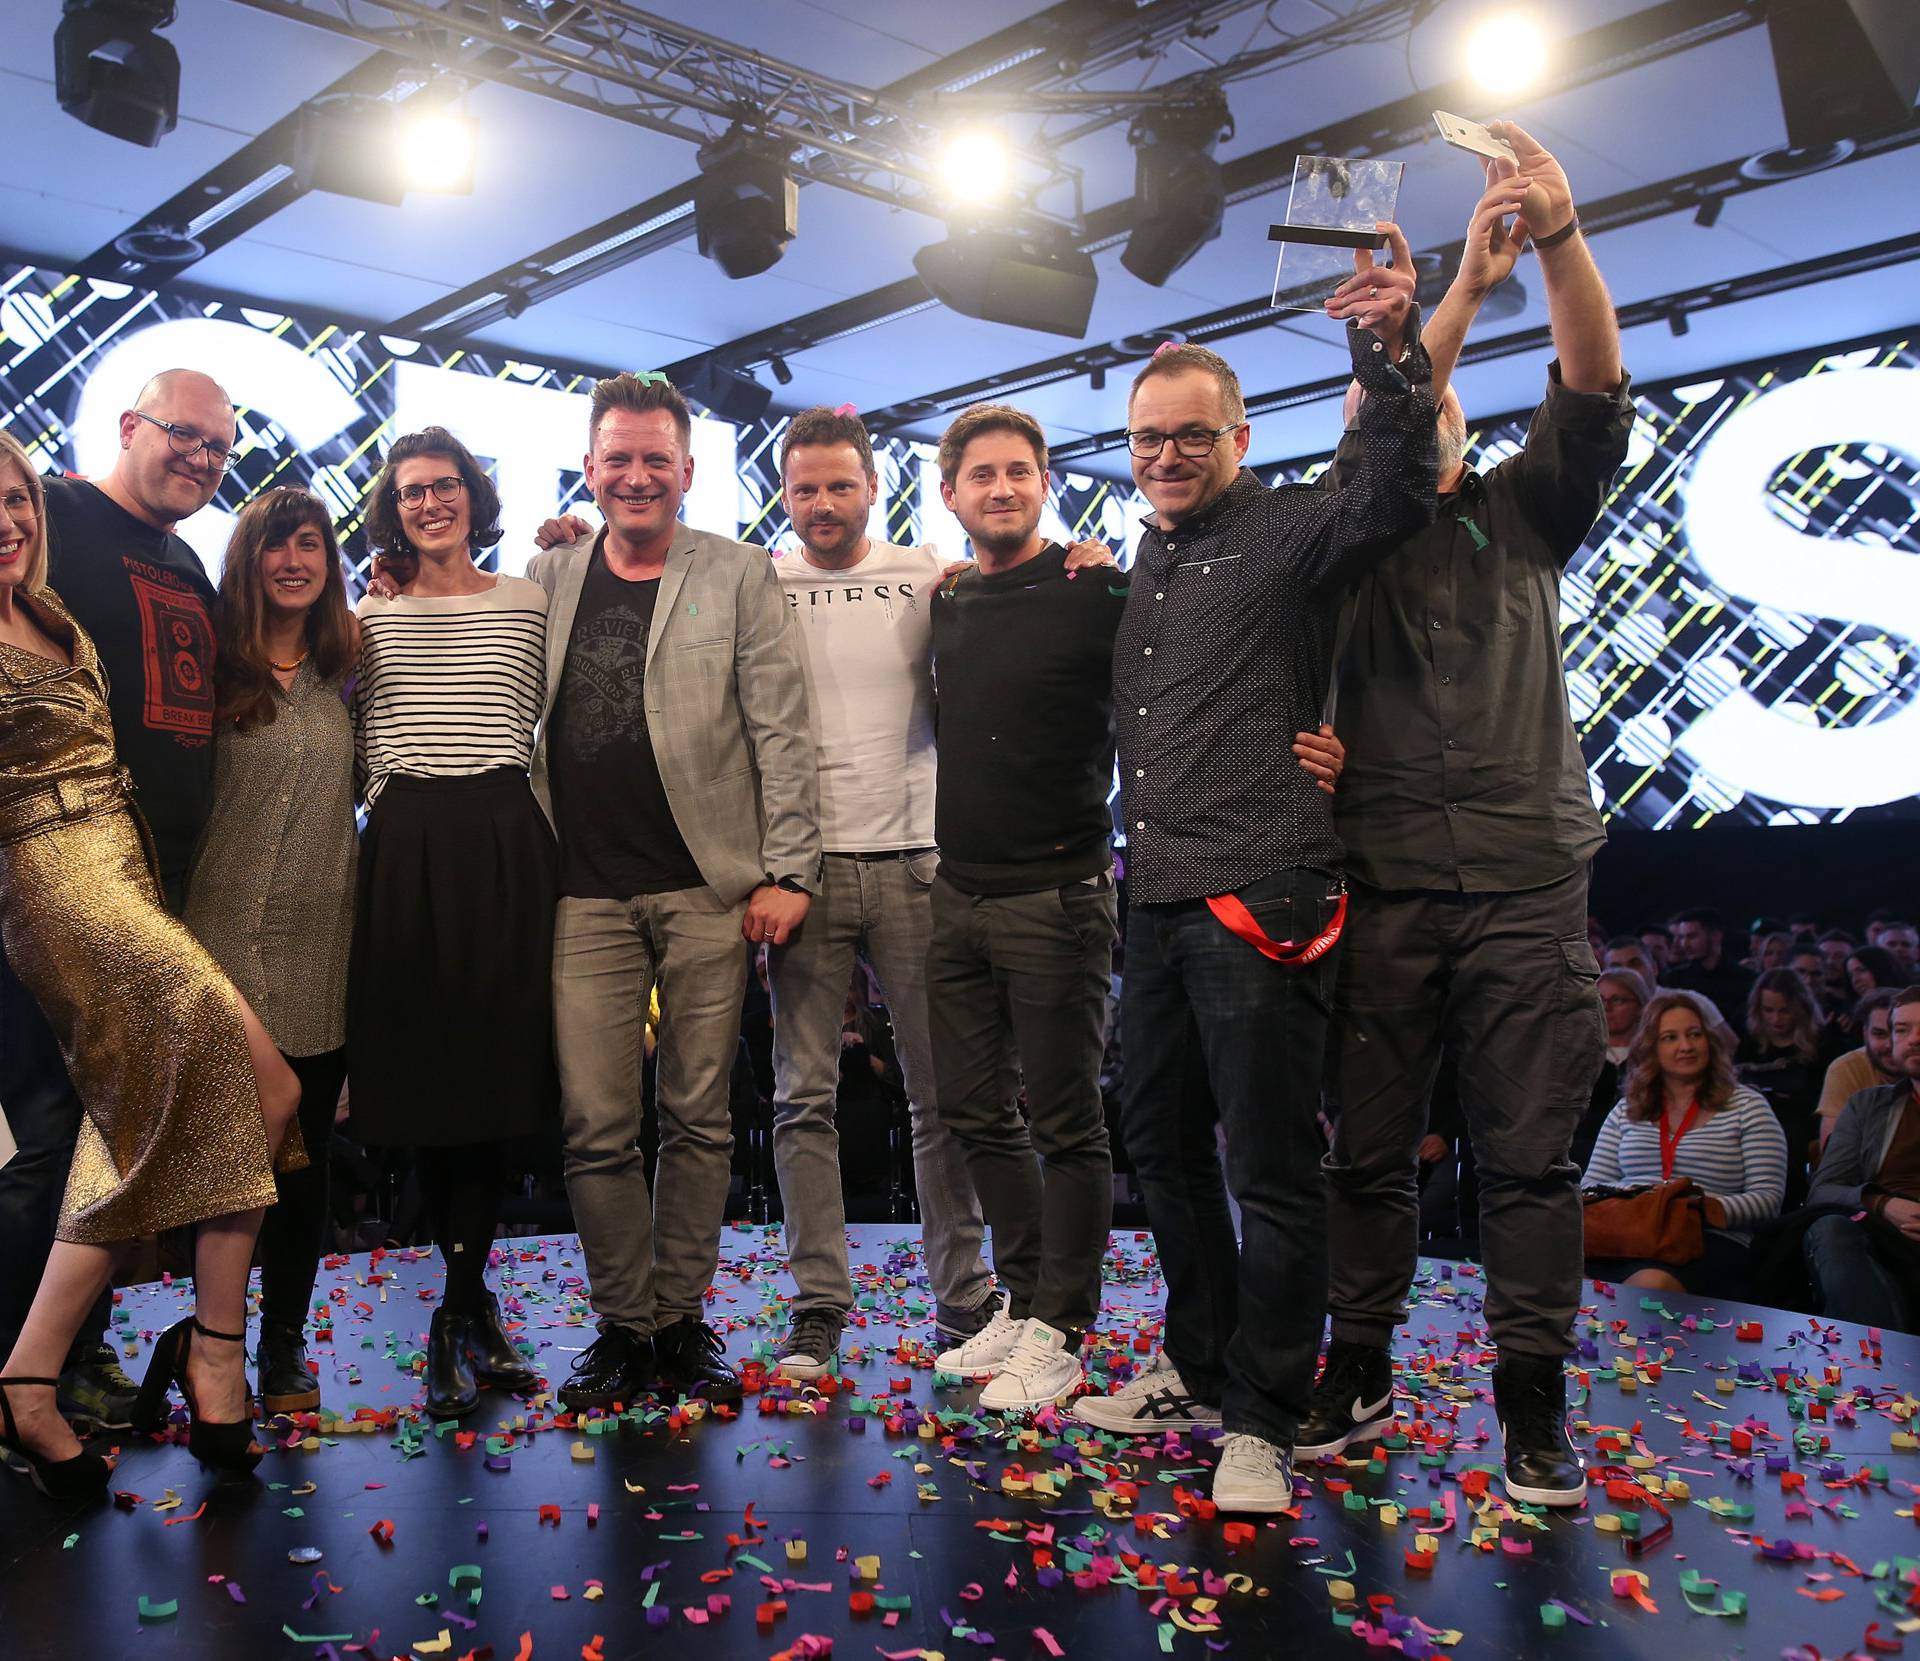 Nagrade IdejaX: Grand Prix osvojila agencija Studio Sonda